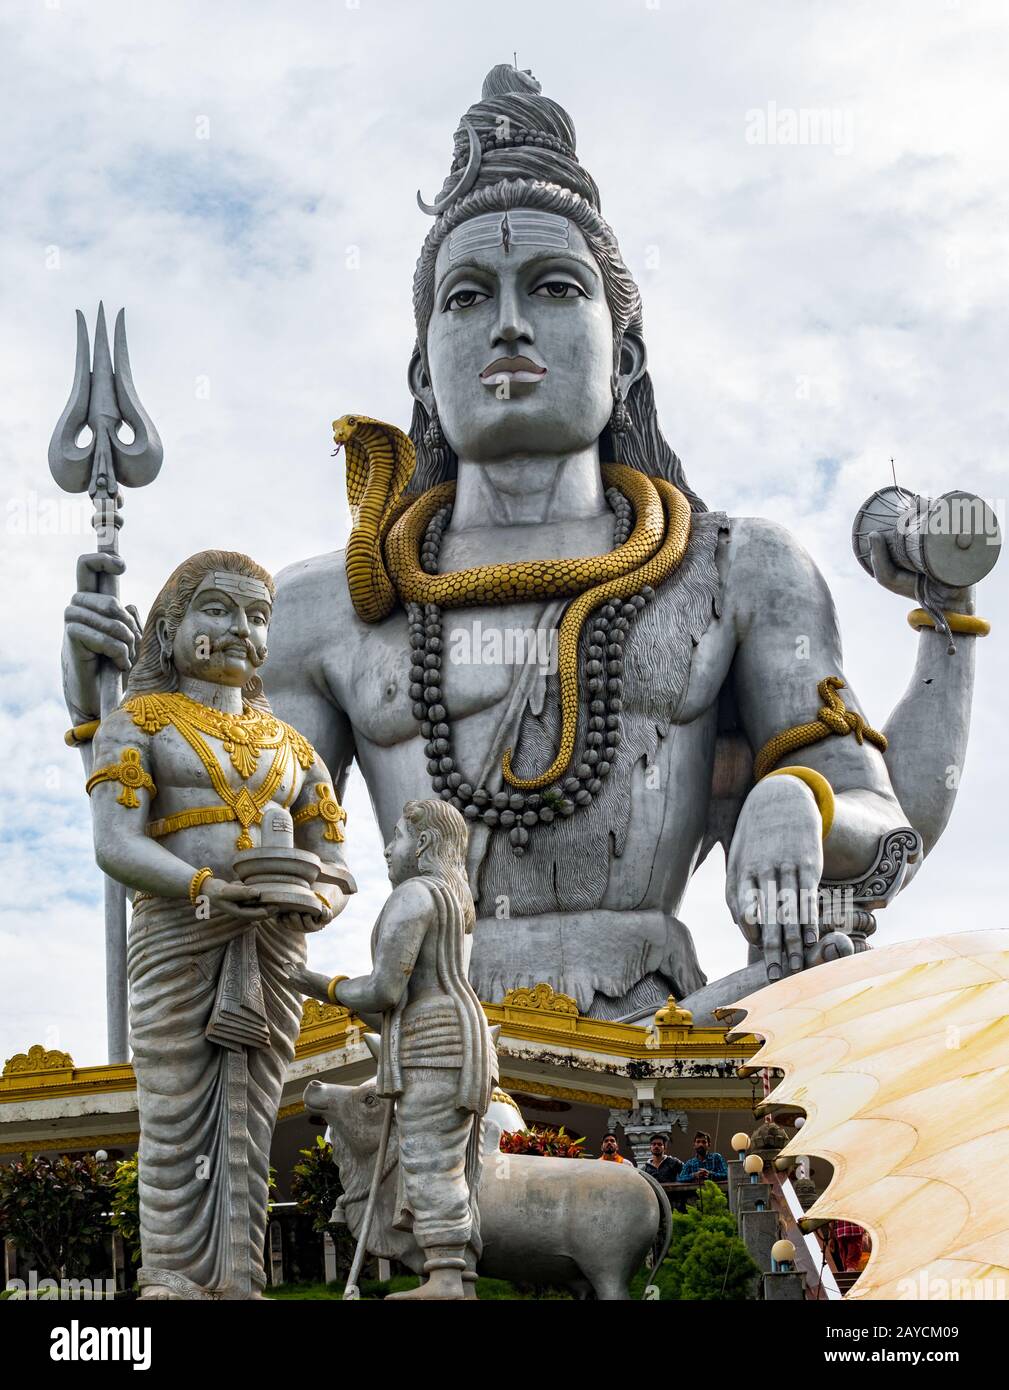 Hindu-Mythen Lord Shiva-Statue, meditiert in Lotus-Pose mit Trident Schlange um den Hals, während ravana dem brahminischen Jungen im Vordergrund Shivling schenkt Stockfoto